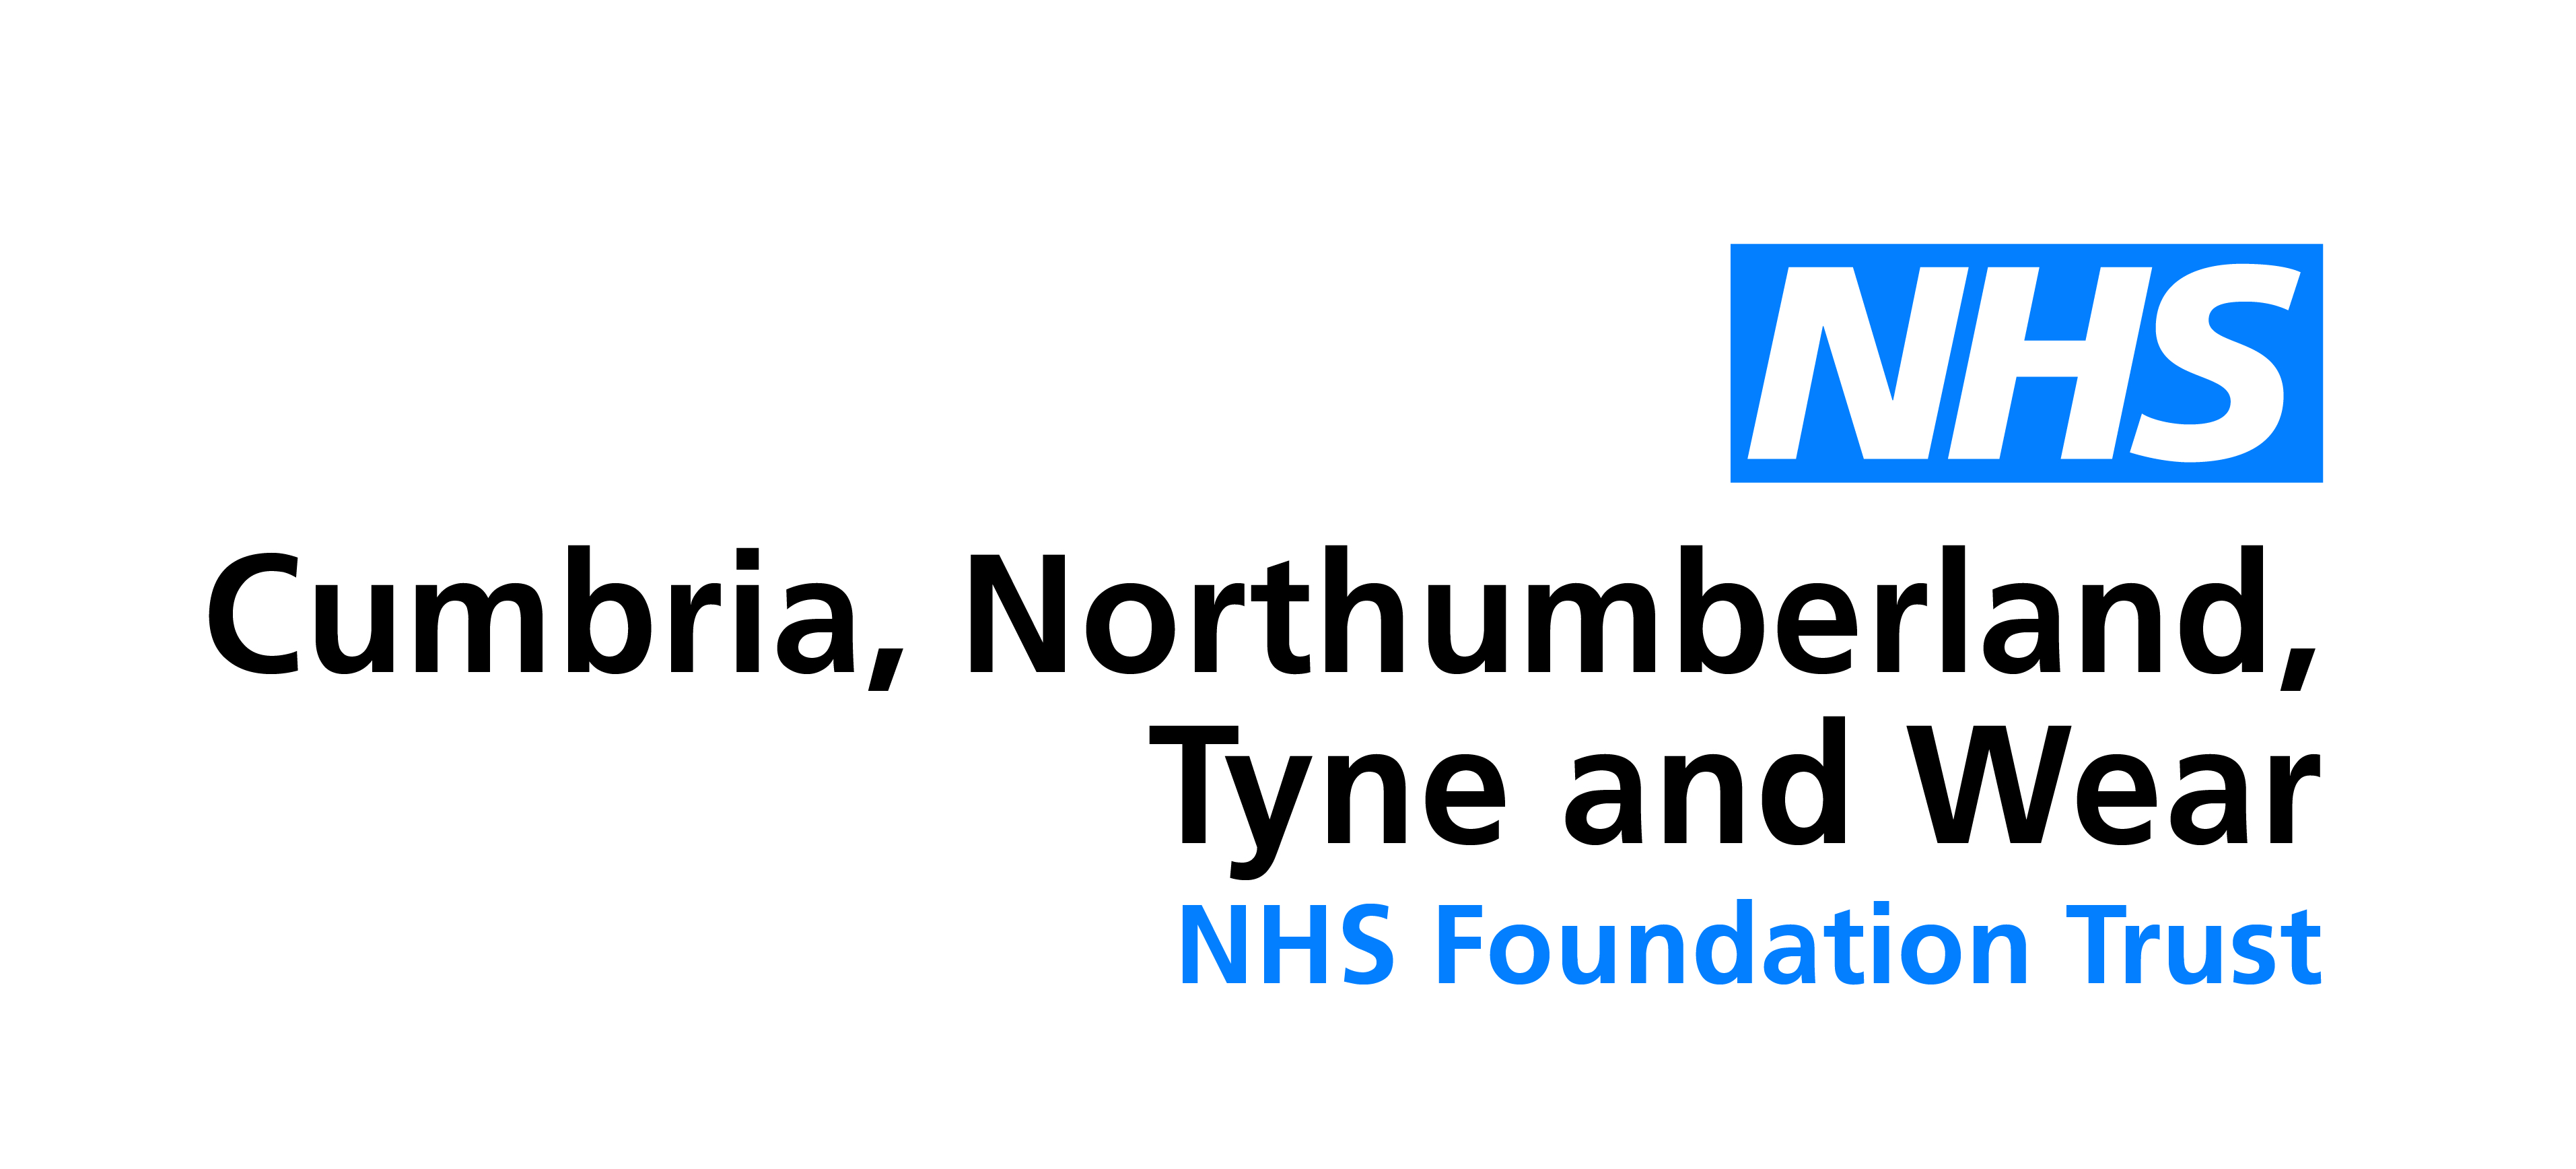 Cumbria NTW FT - Logo